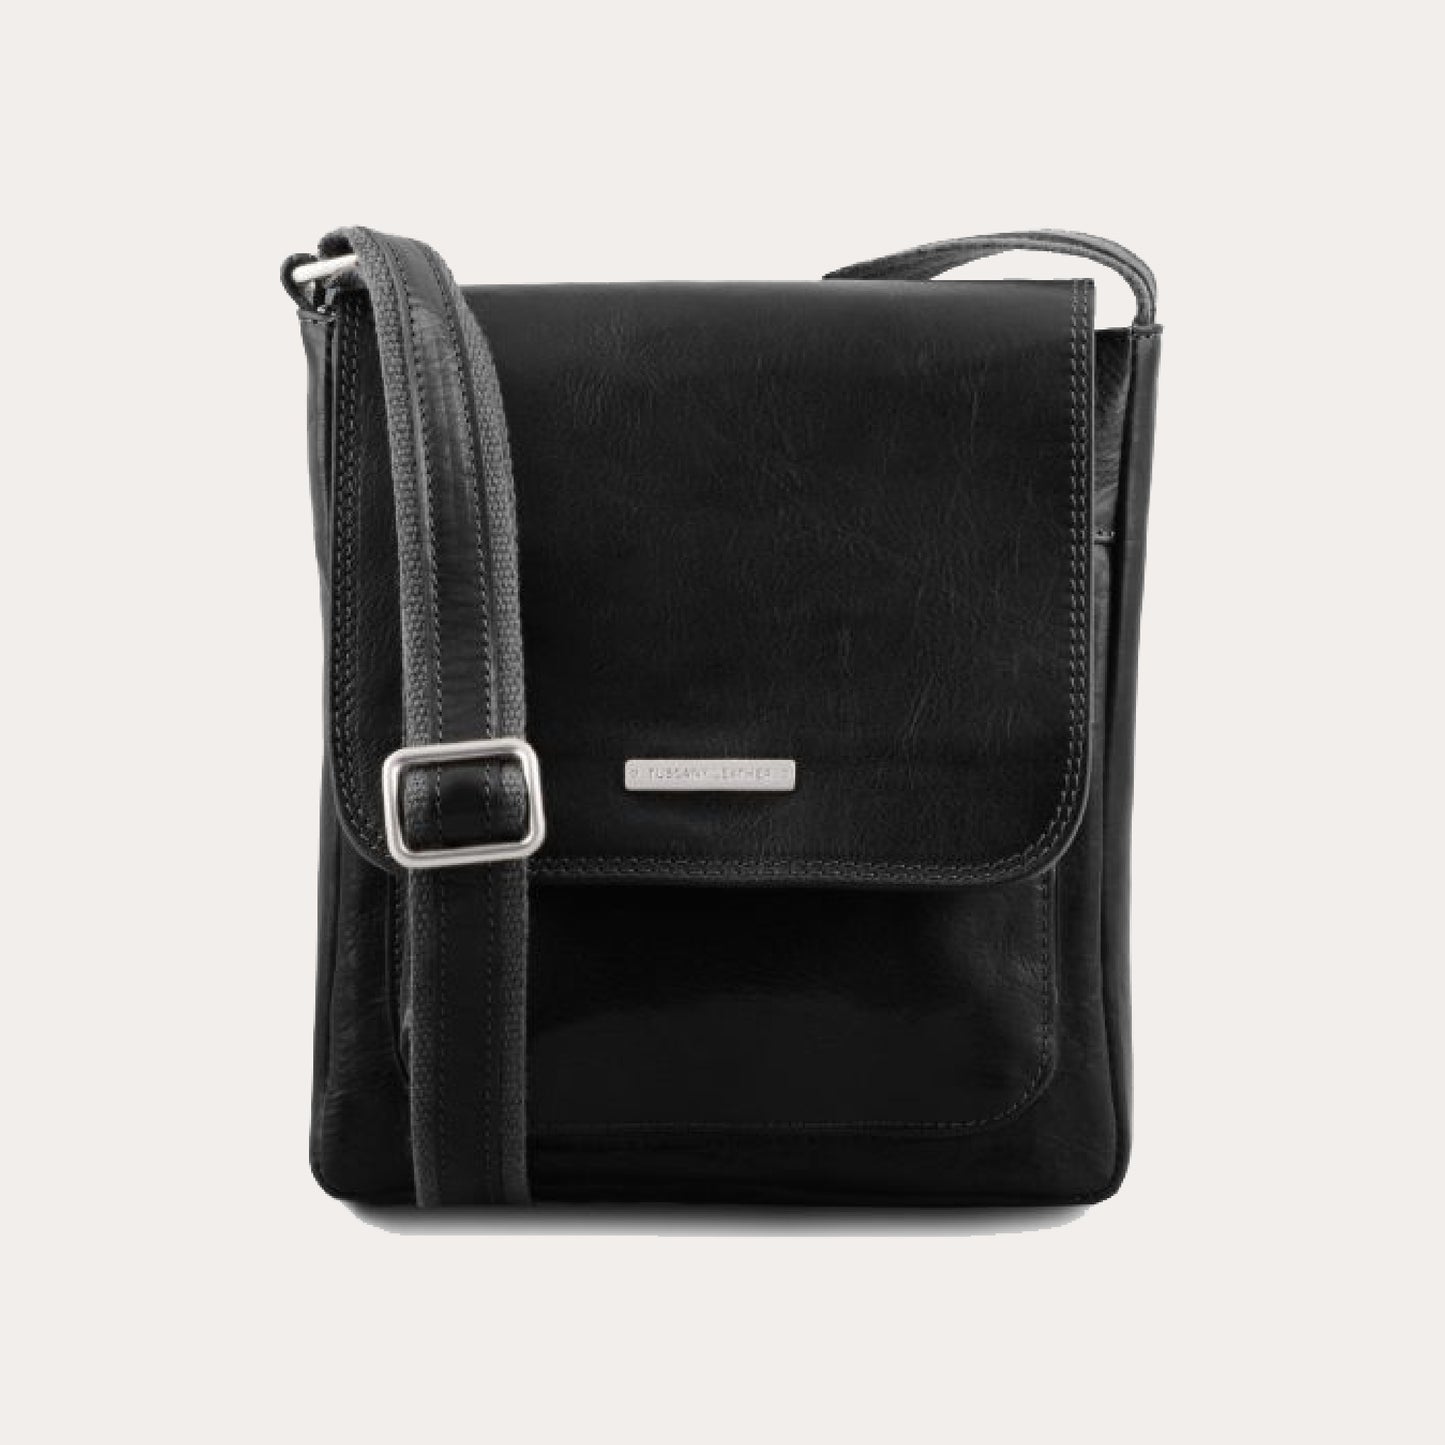 Tuscany Leather Black Leather Crossbody Bag